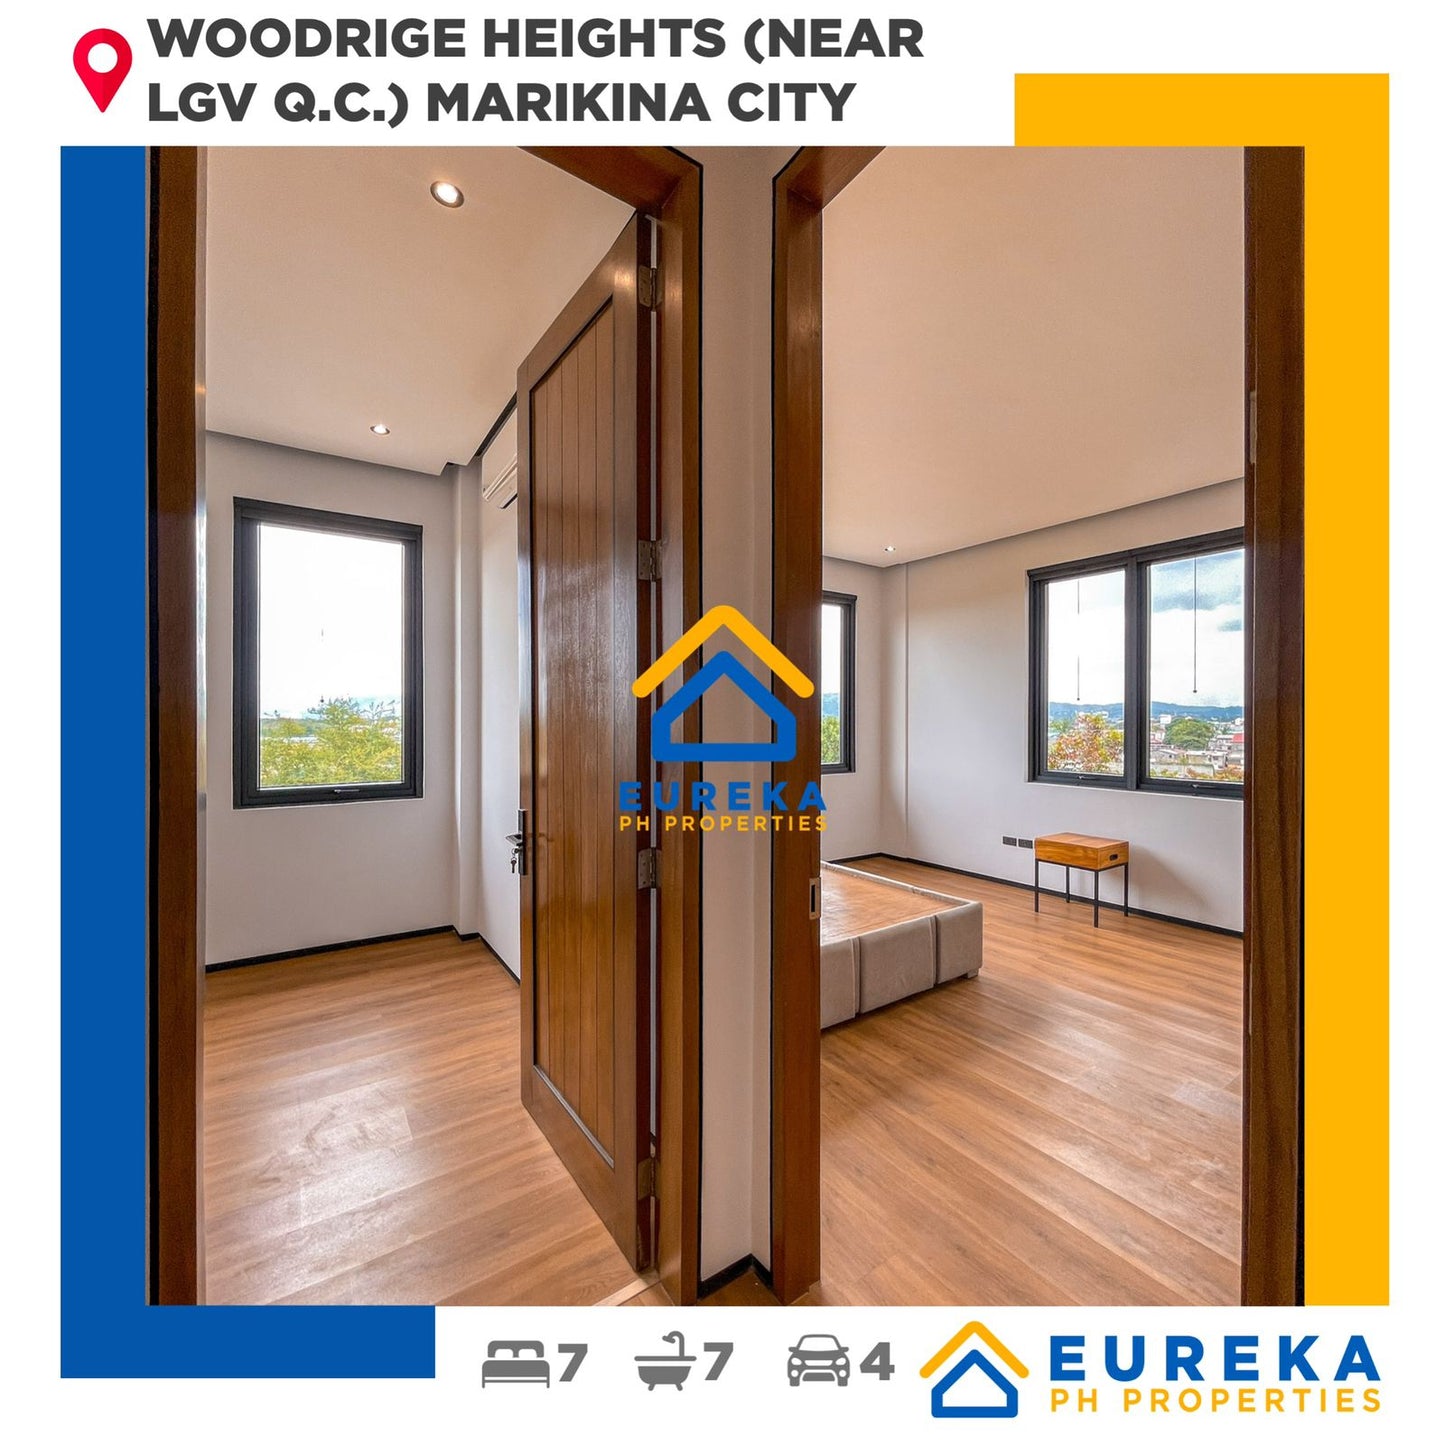 Brand New Premium 4 Storey Modern House and Lot at Woodridge Heights Marikina (Near LGV Q.C.)